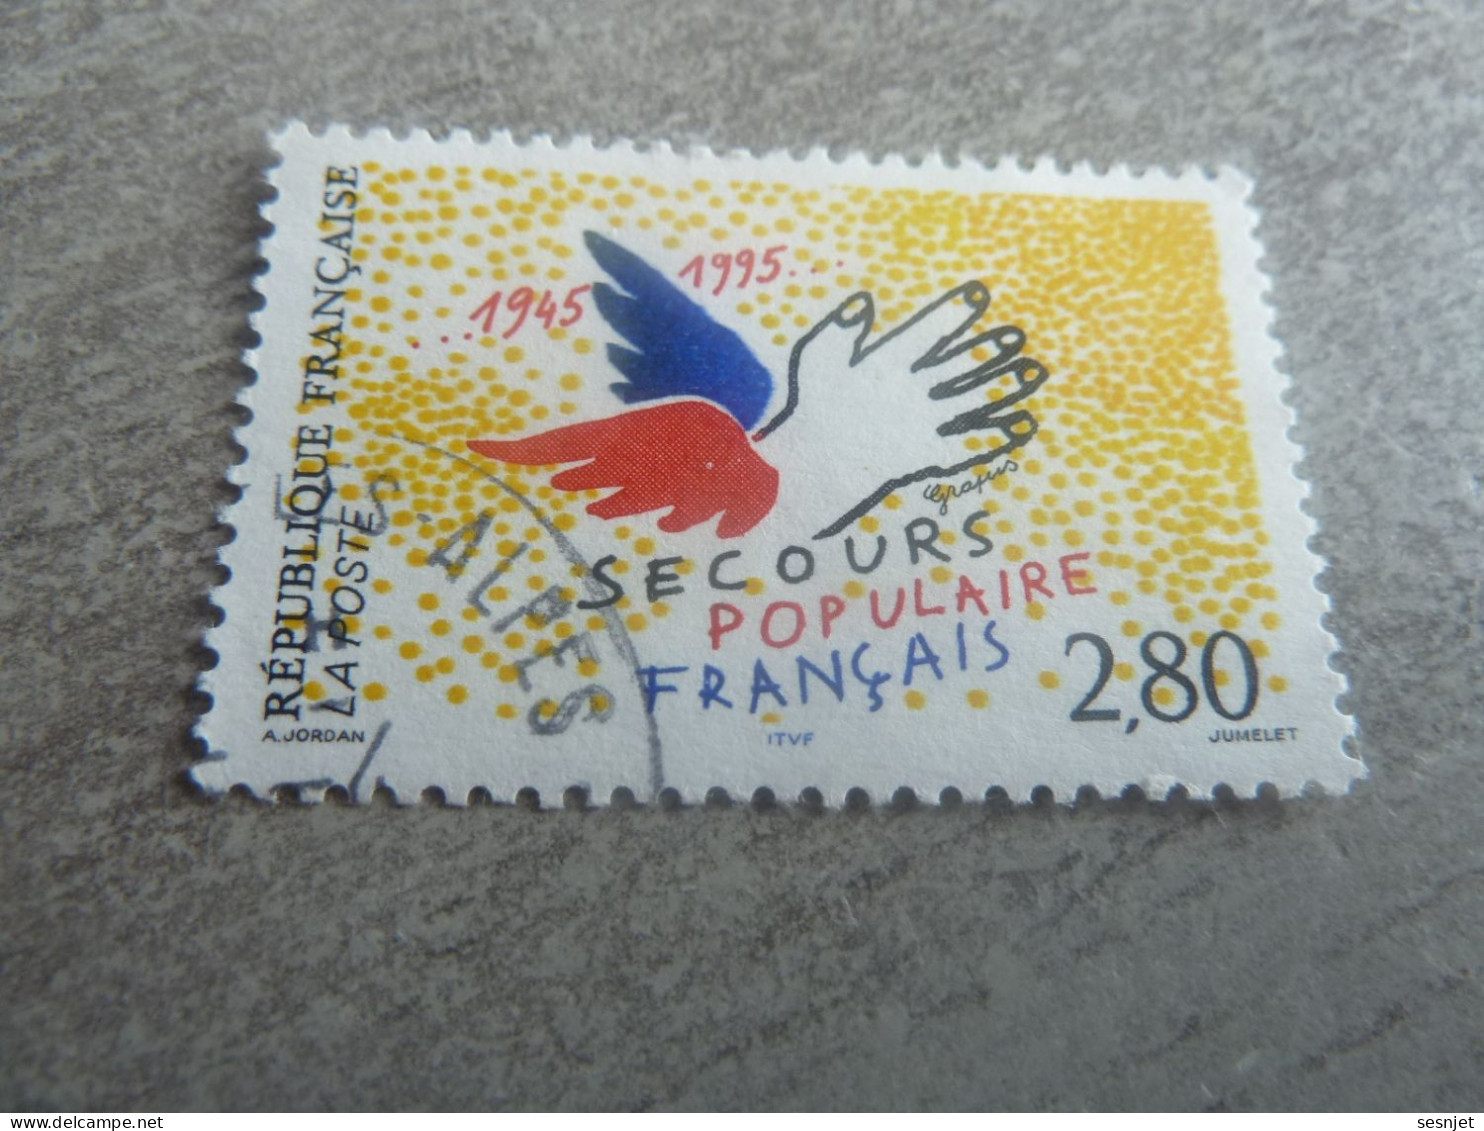 Cinquantenaire Du Secours Populaire Français - 2f.80 - Yt 2947 - Jaune, Noir, Rouge Et Bleu - Oblitéré - Année 1995 - - Oblitérés